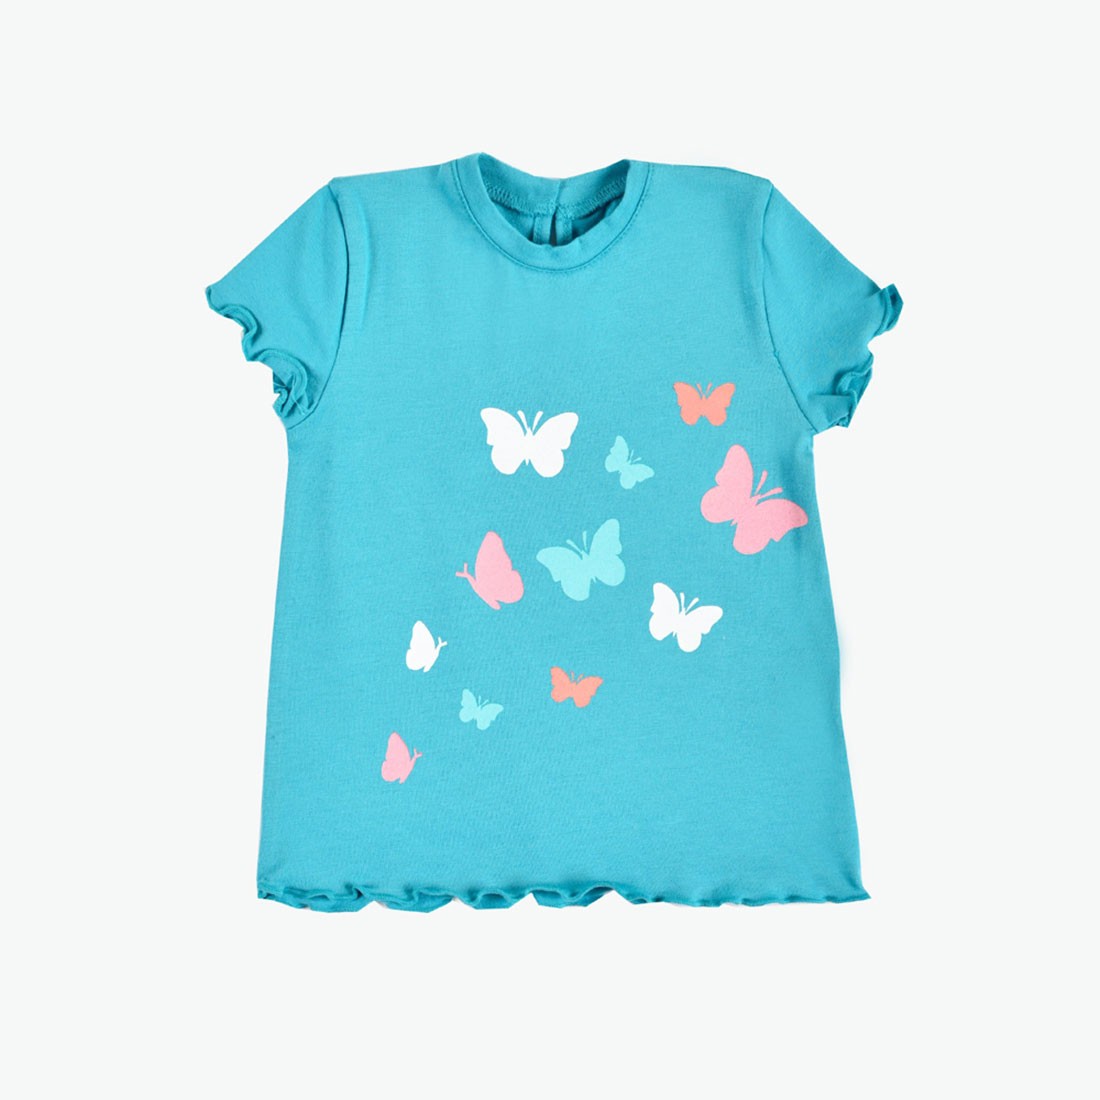 OrganicEra Organic T-shirt, Butterflies